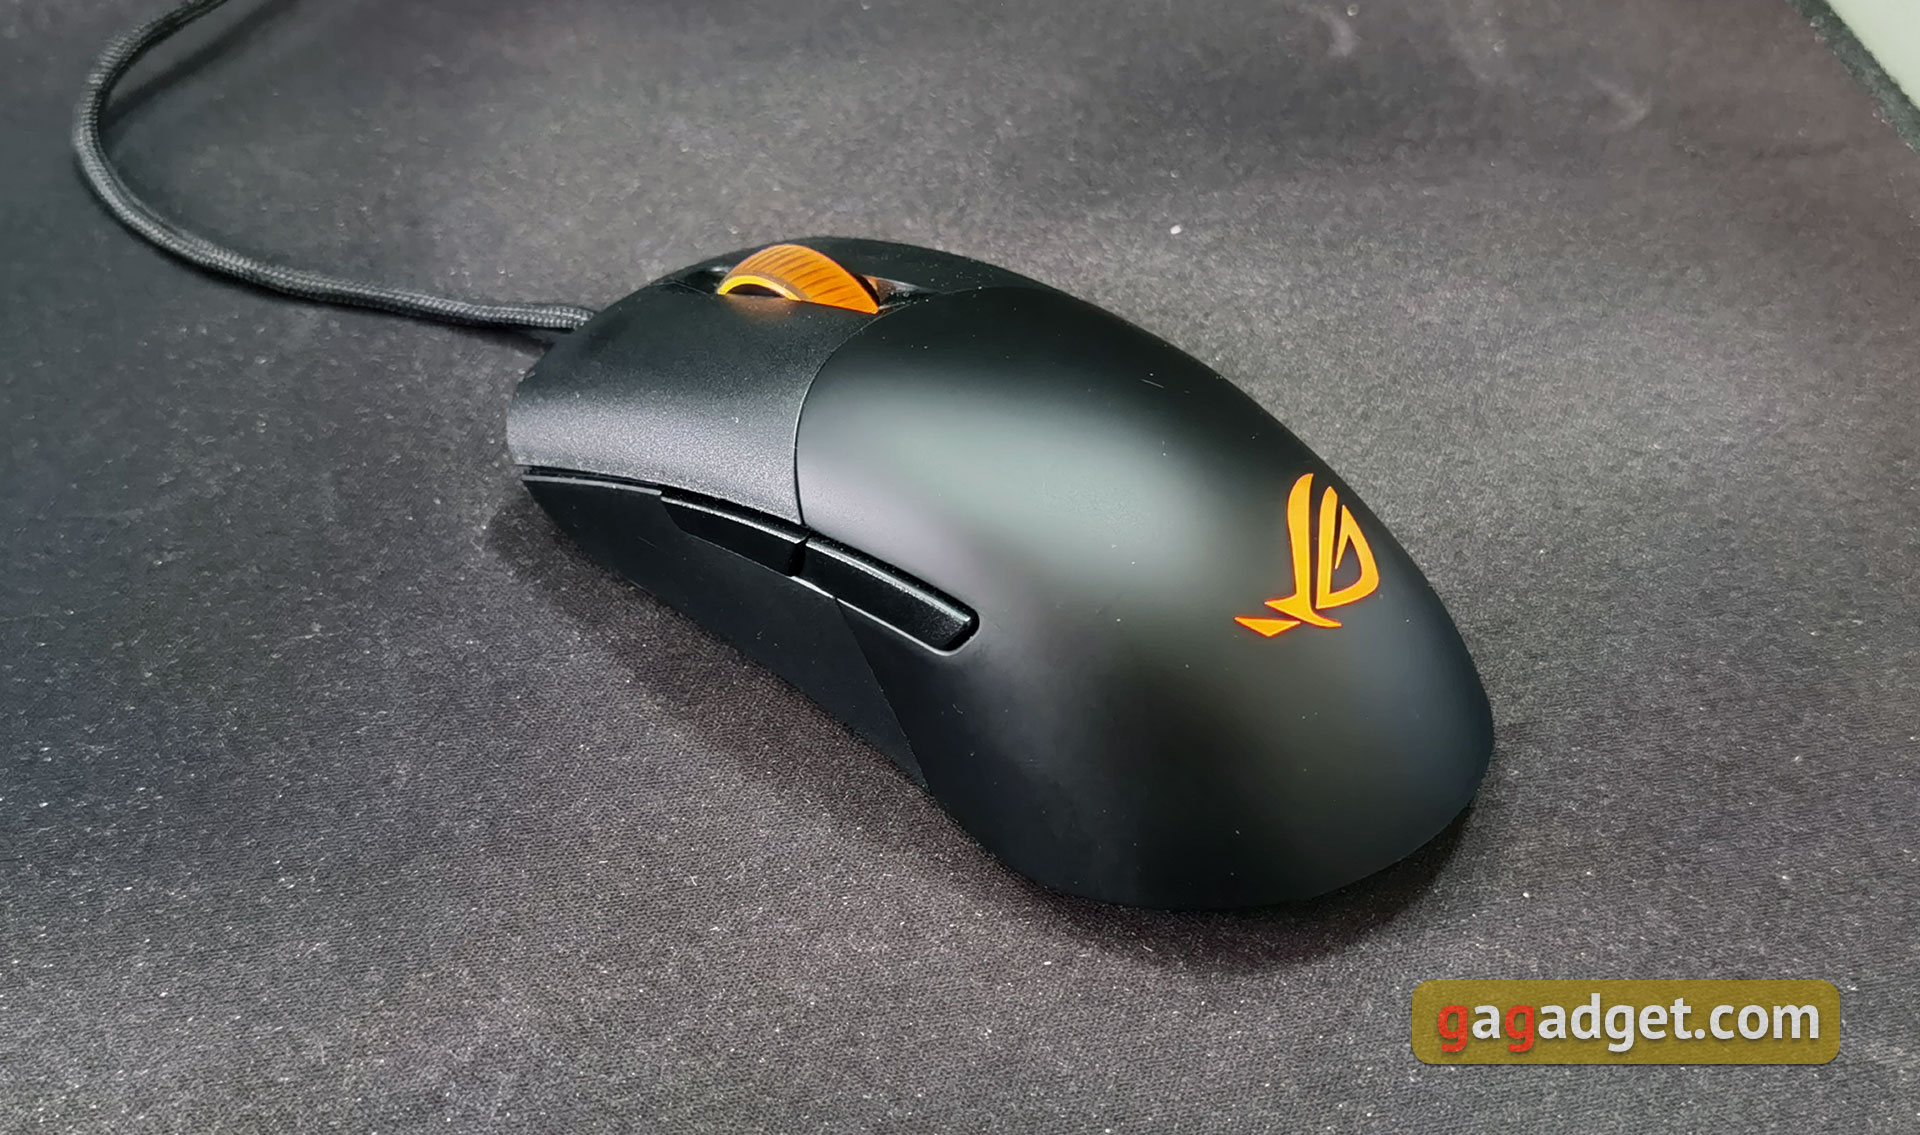 Recenzja ASUS ROG Keris: Ultralekka gamingowa mysz z szybkim czujnikiem -24